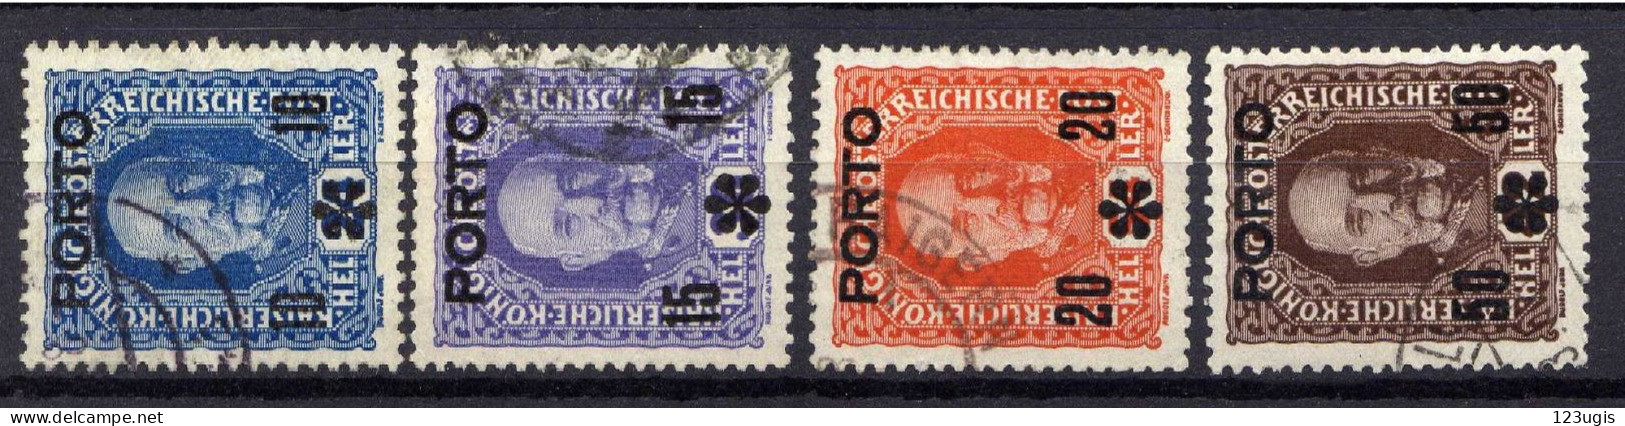 Österreich 1917 Portomarken Mi 60-63, Gestempelt [170524XIV] - Used Stamps